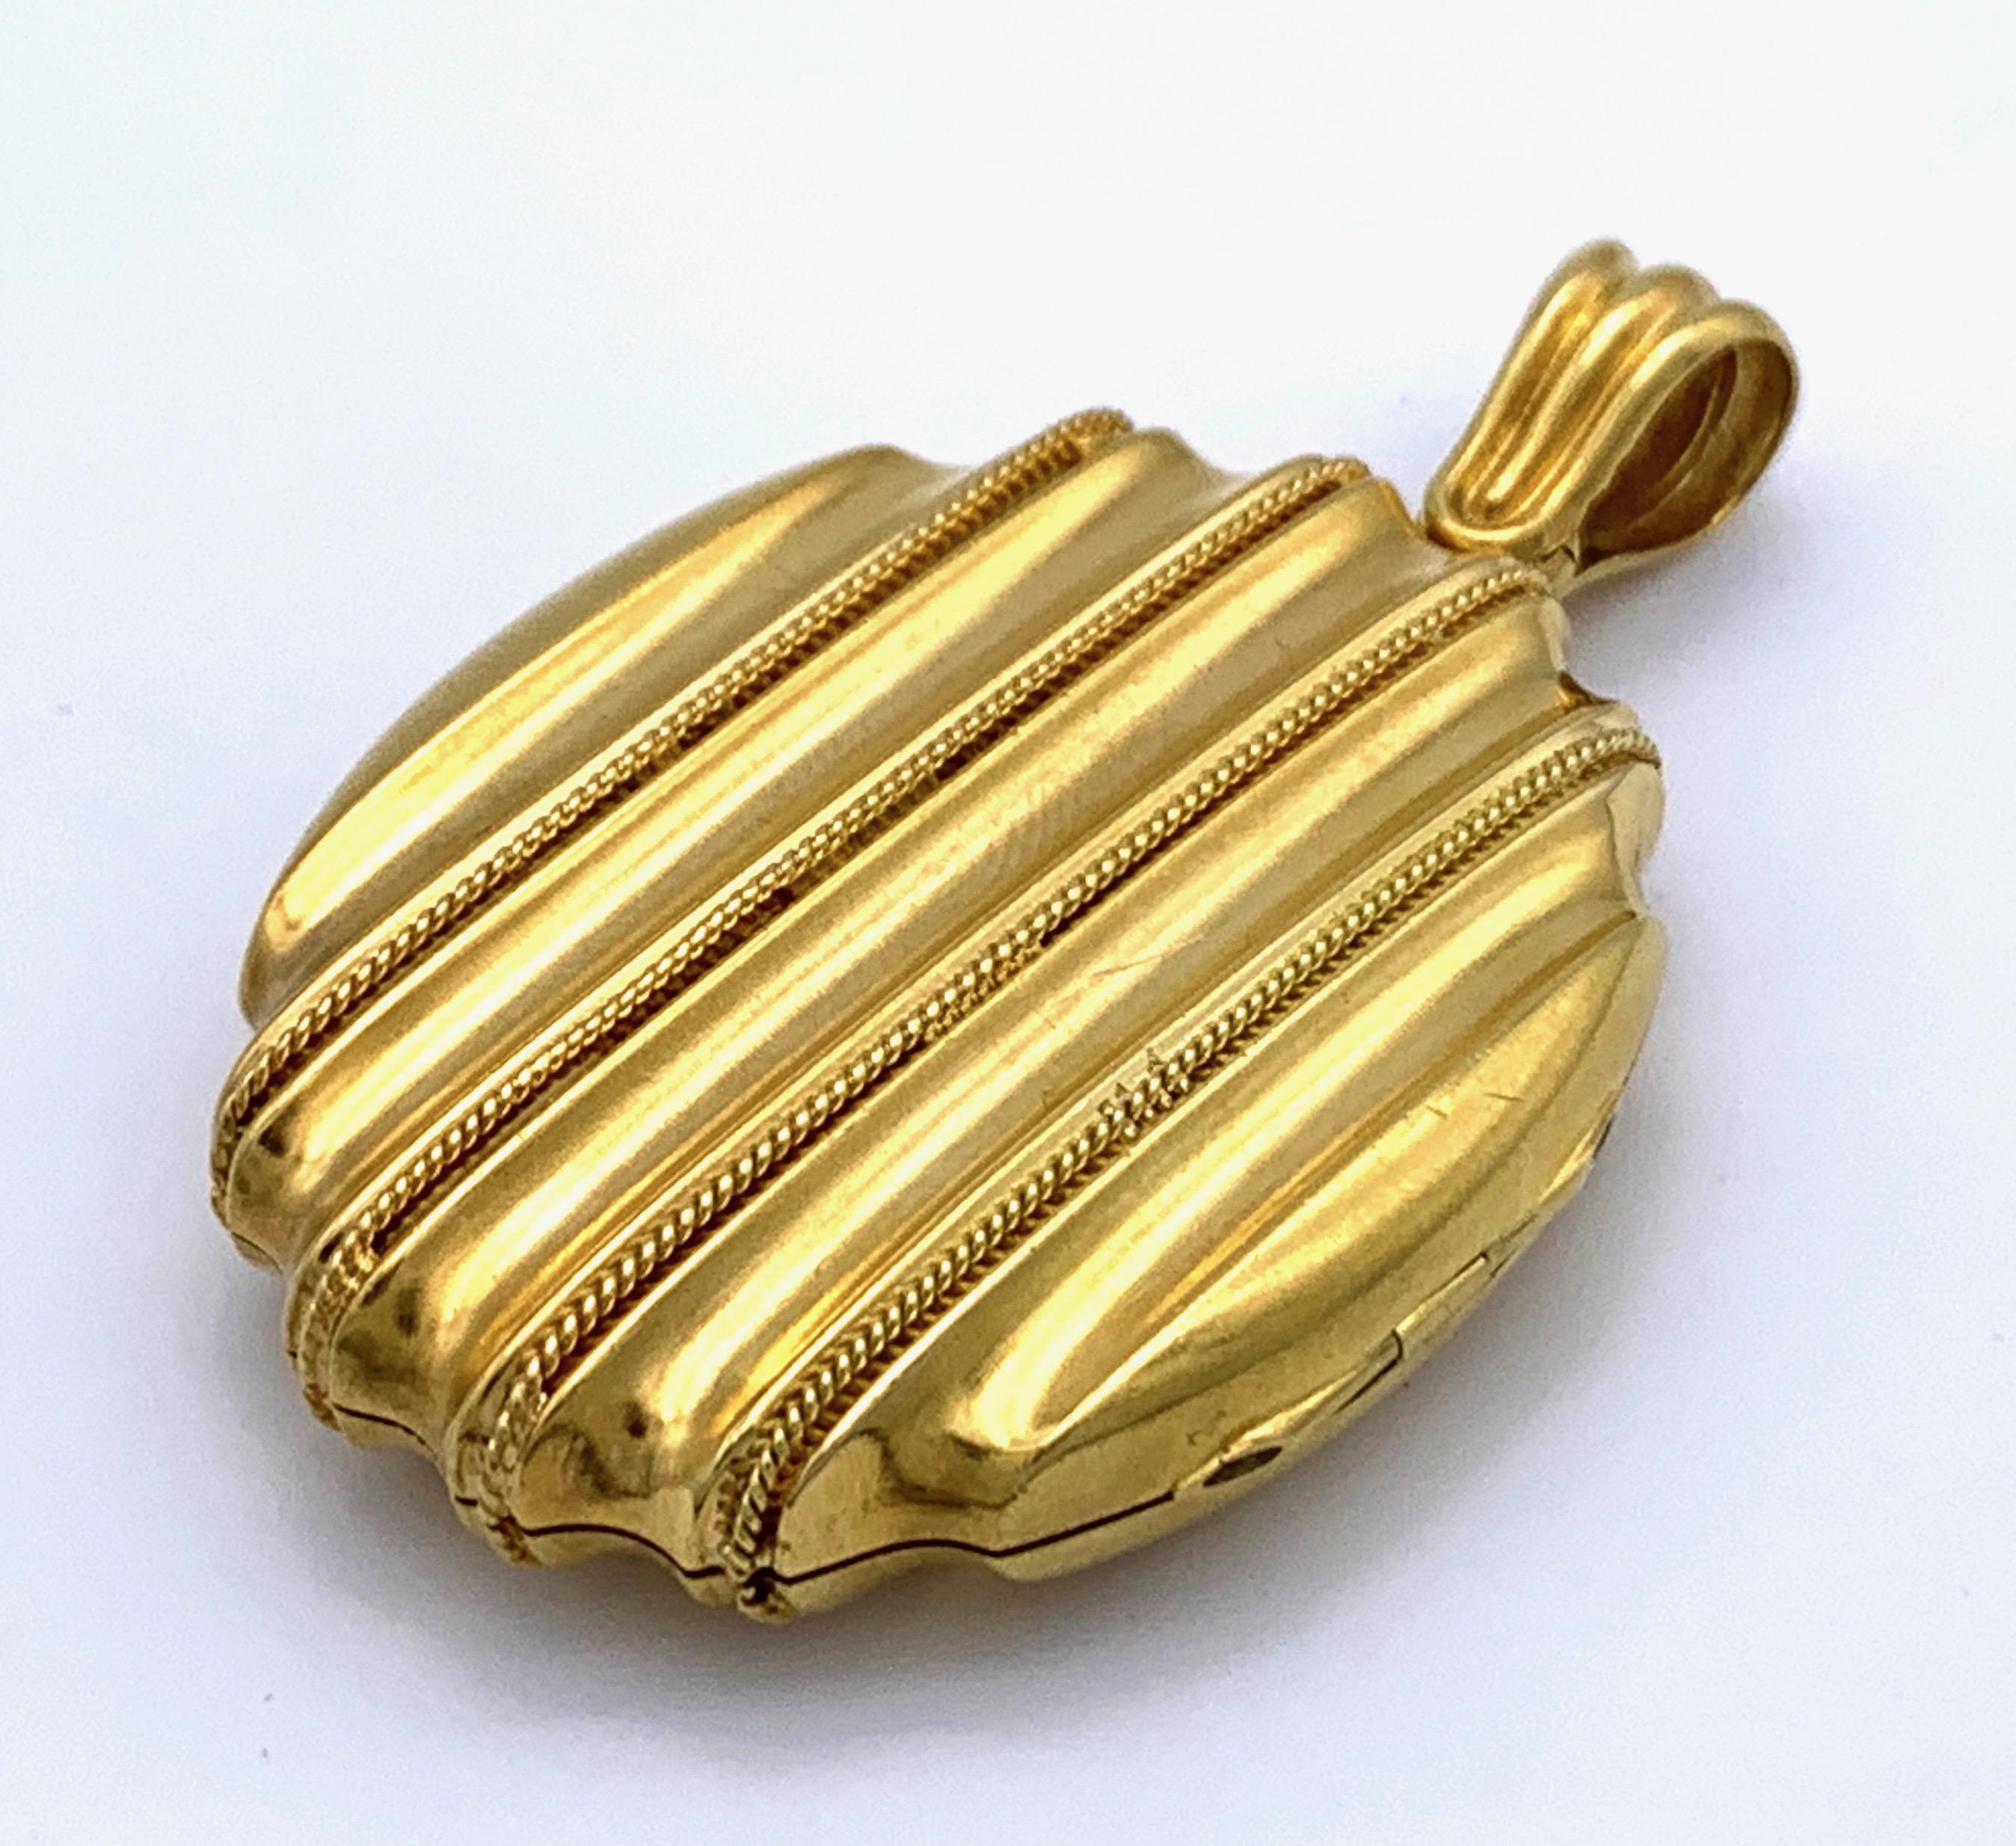 Le médaillon ovale est fabriqué en or bicolore 15K et décoré de fils d'or tordus. À l'intérieur, on trouve les cadres dorés d'origine. 
Ce médaillon épais est un bel exemple de design moderniste victorien. 